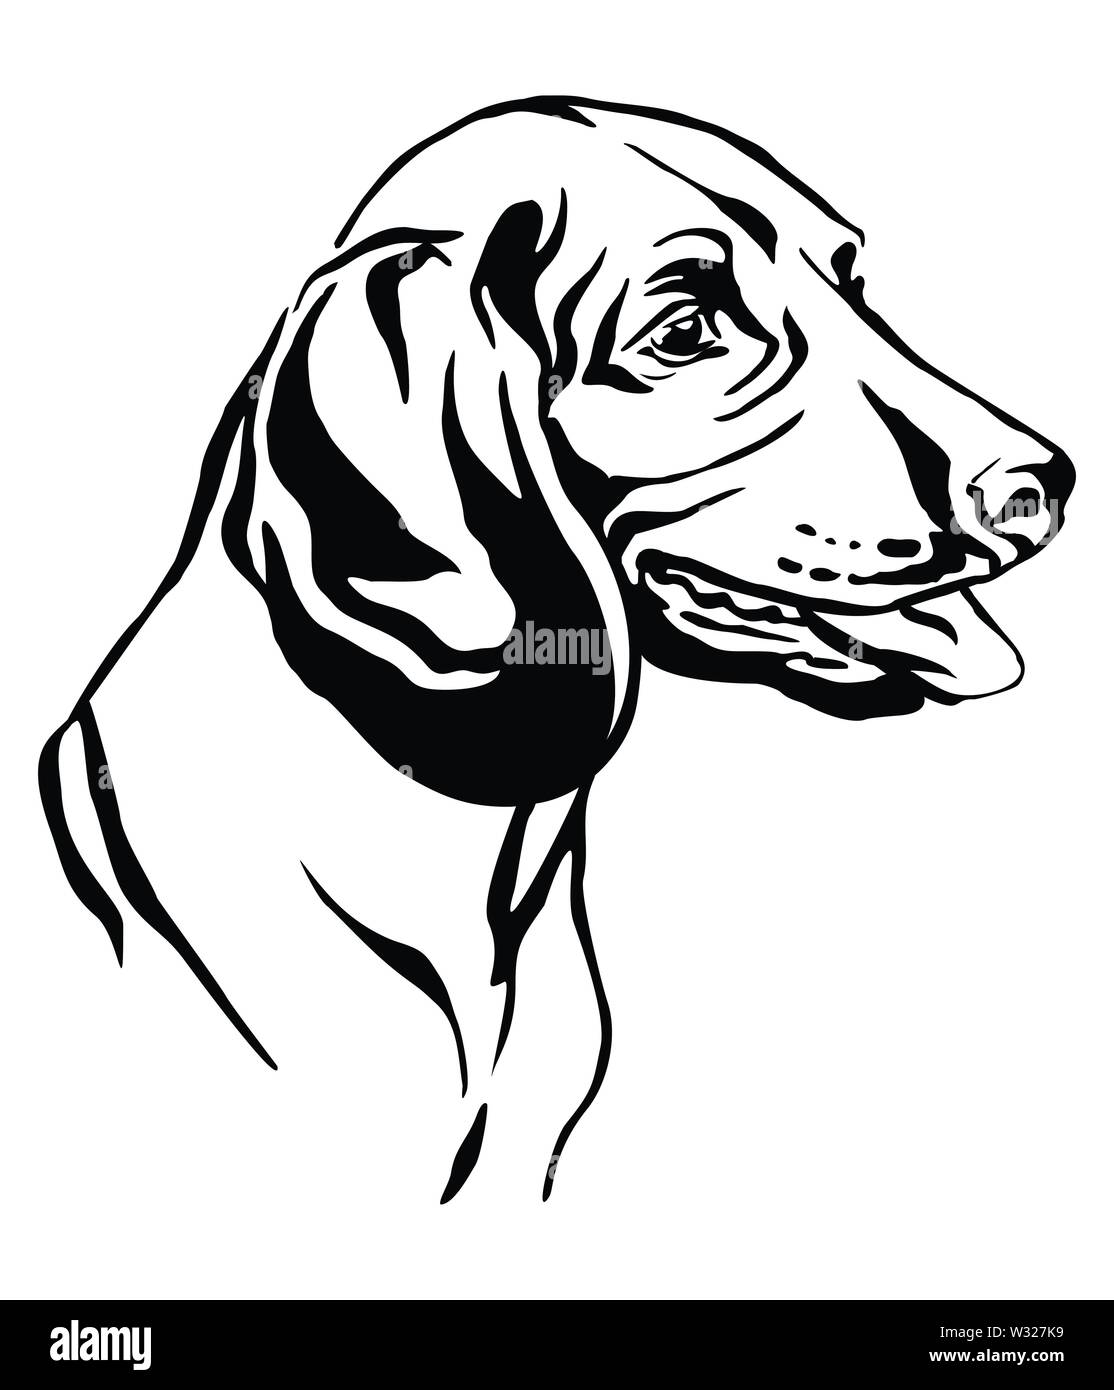 Profilo decorativo ritratto di cane montagna bavarese Hound cercando di profilo, illustrazione vettoriale in colore nero isolato su sfondo bianco. Immagine Illustrazione Vettoriale